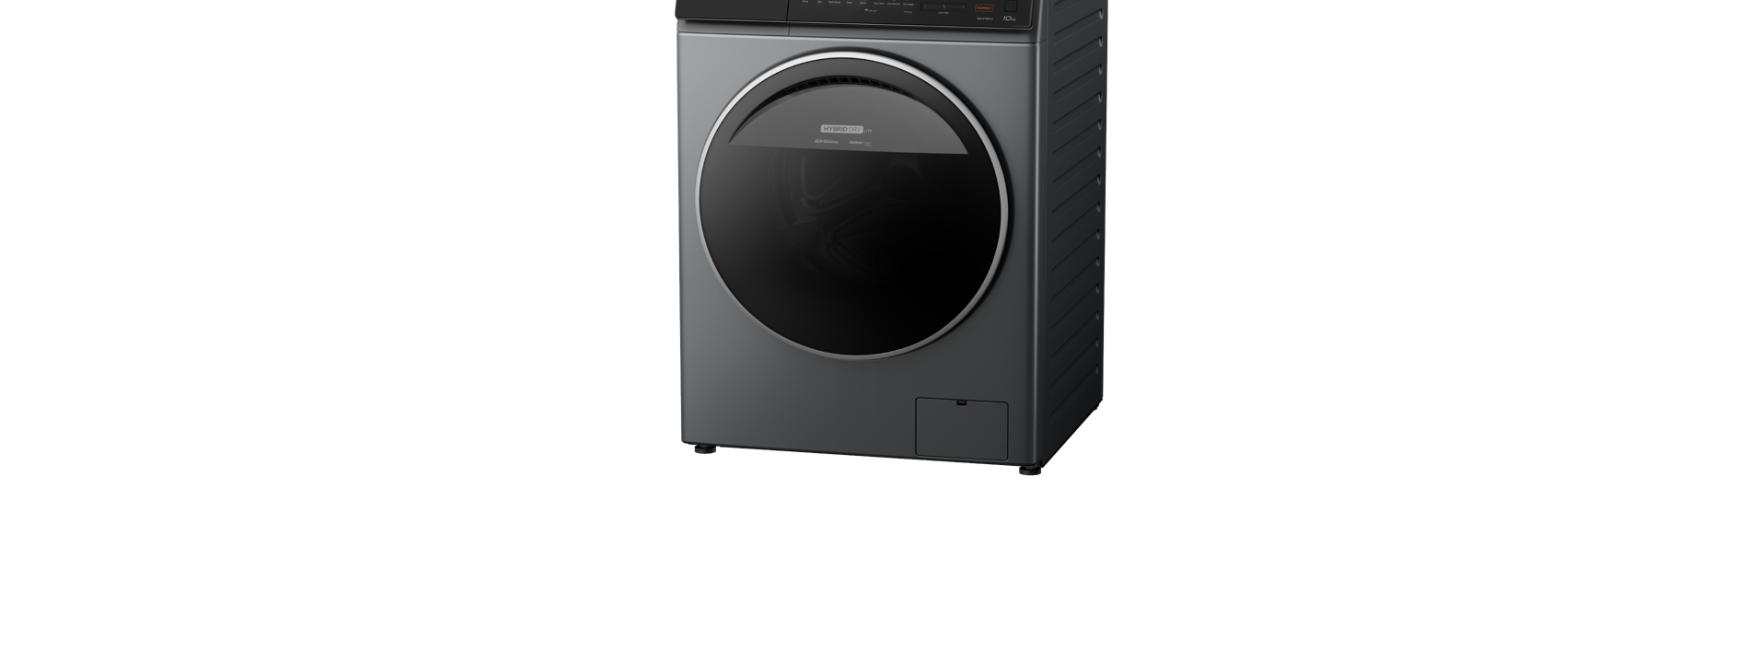 Máy giặt Panasonic NA-V10FC1LVT 